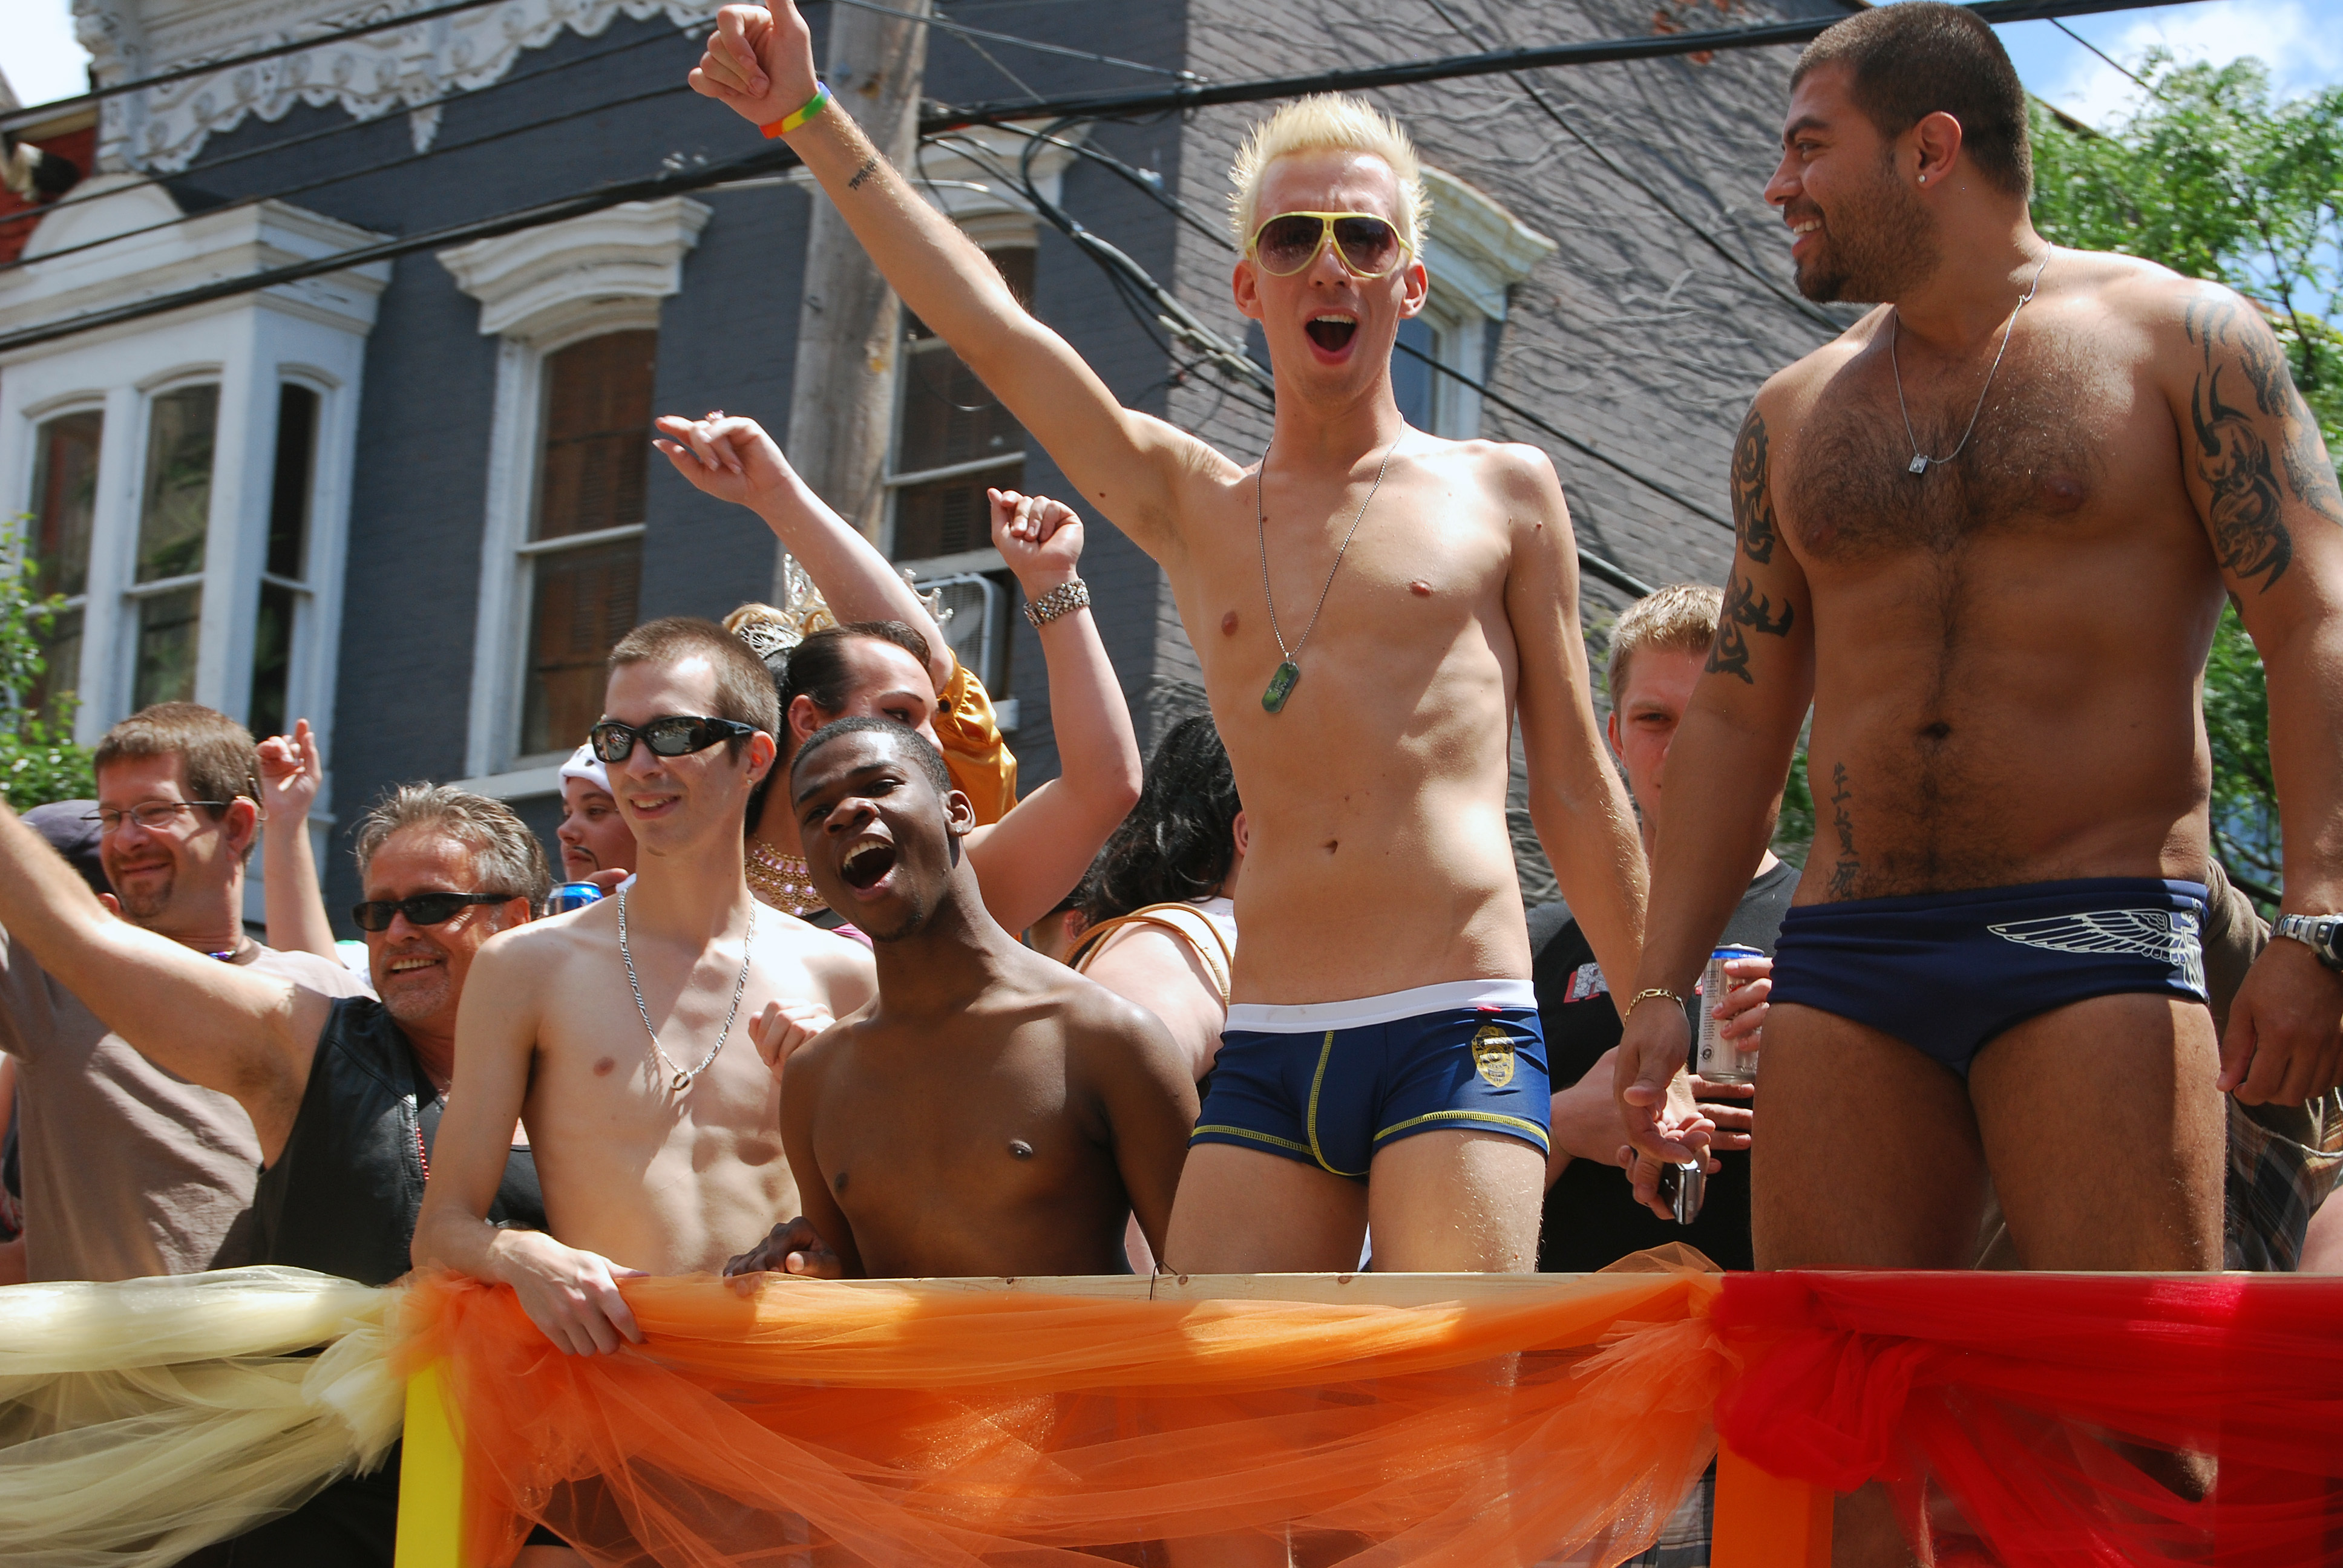 Ματαιώθηκε η πολυσηζητημένη παρέλαση ομοφυλόφιλων στην Αλβανία